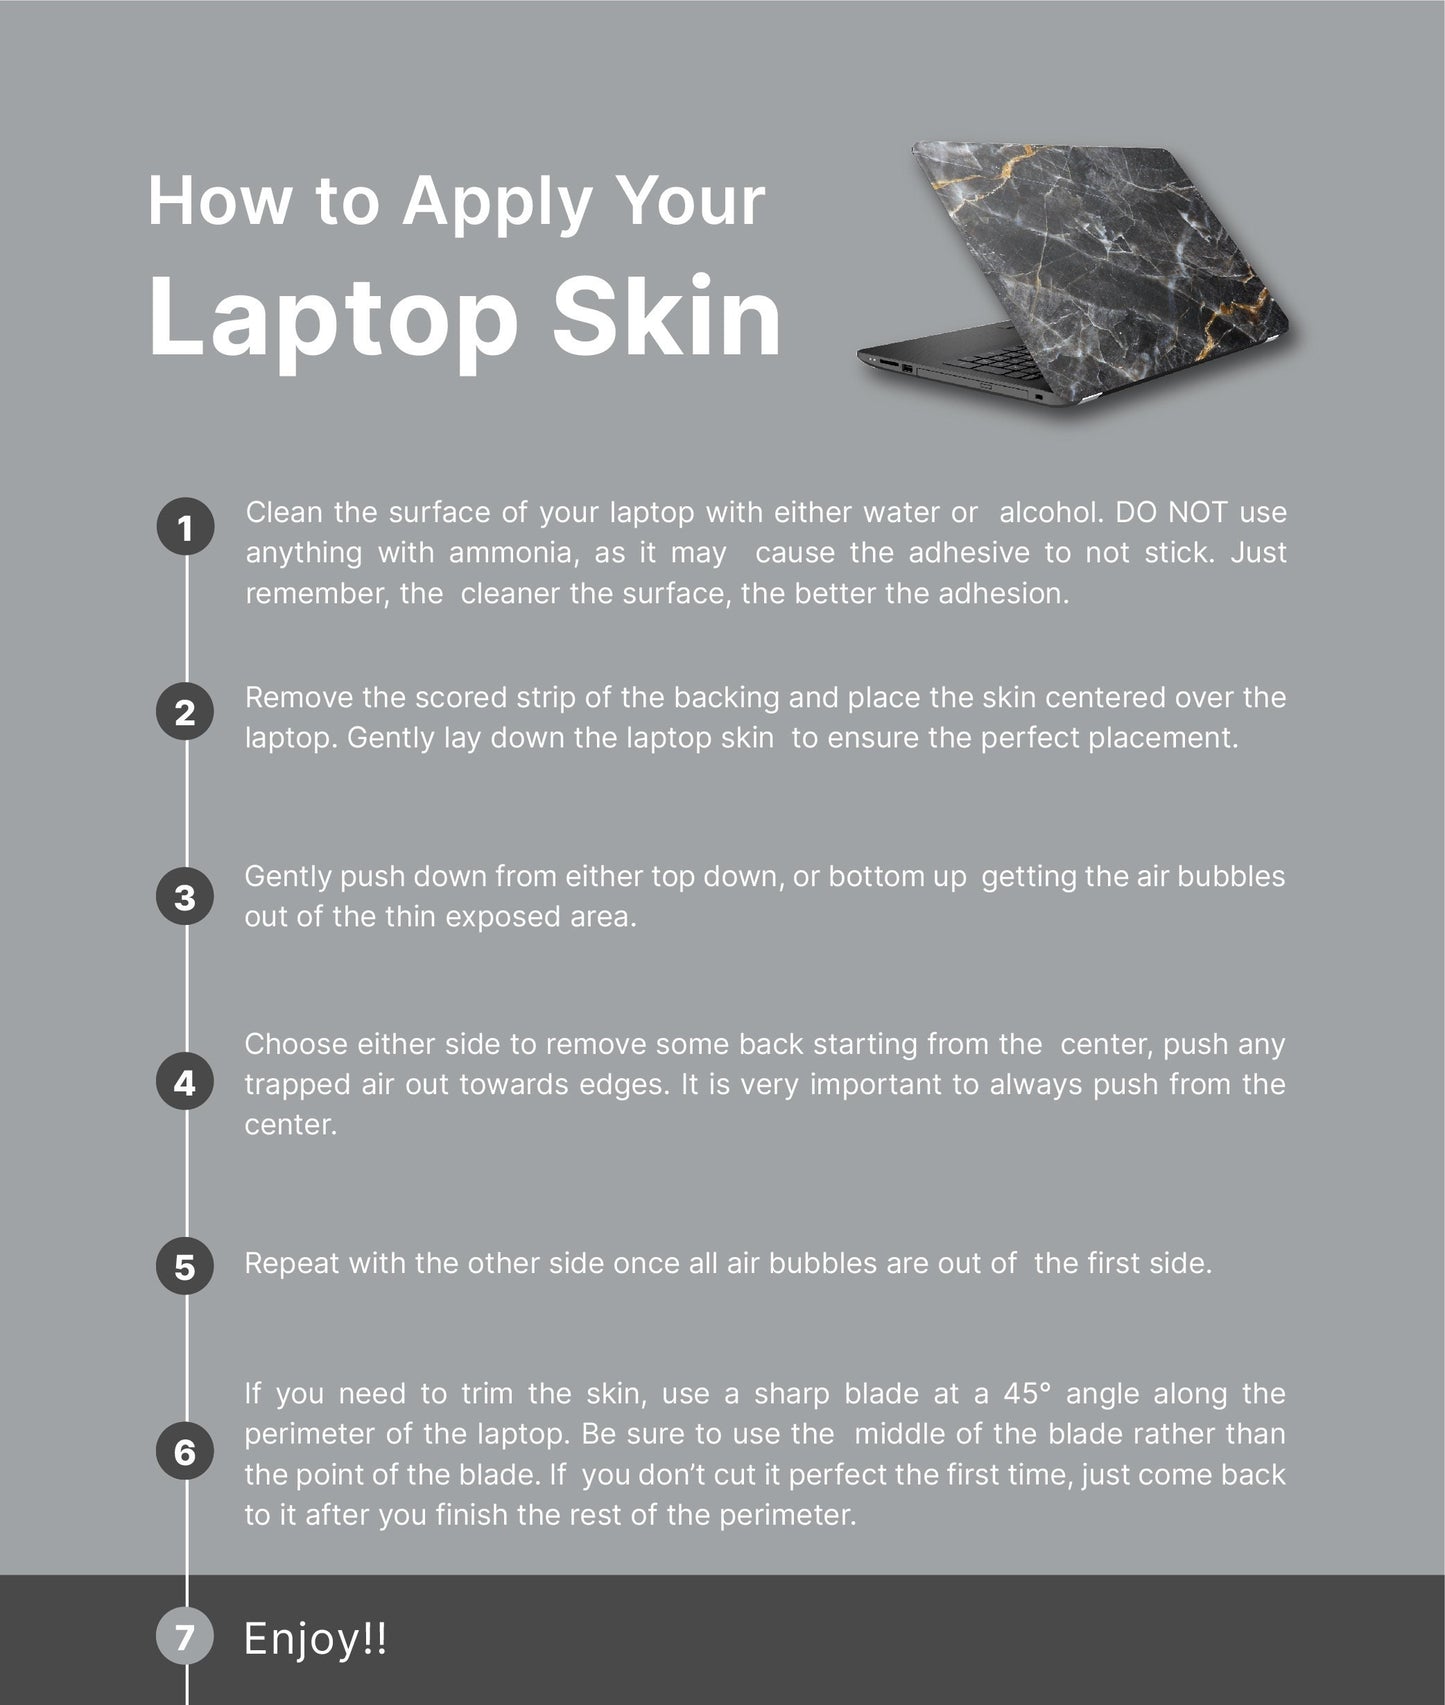 Pink and Gold Laptop Skin, Laptop Cover, Laptop Skins, Removable Laptop Skins, Laptop Decal, Customized Laptop Skin, Laptop Stickers 298